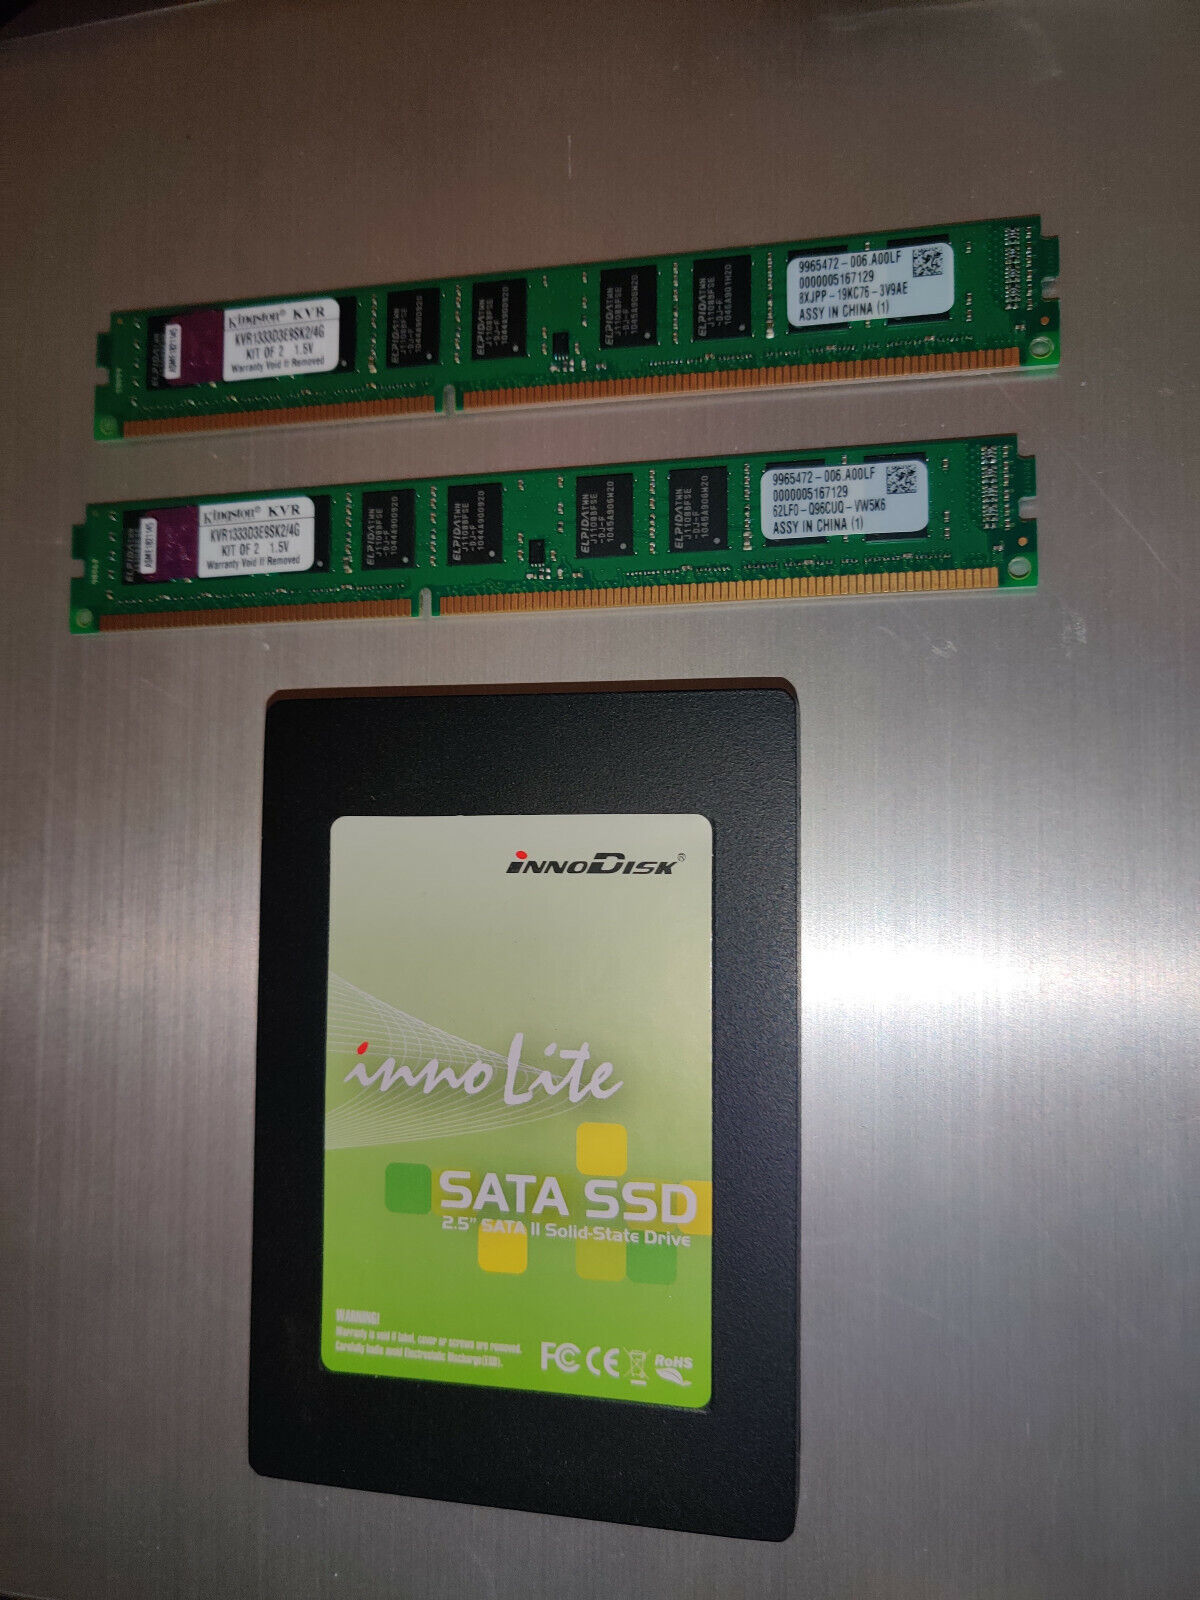 16GB InnoLite II 2.5 SATA SSD + 4GB DDR3 RAM KIT KINGSTON 240 PIN MEMORY